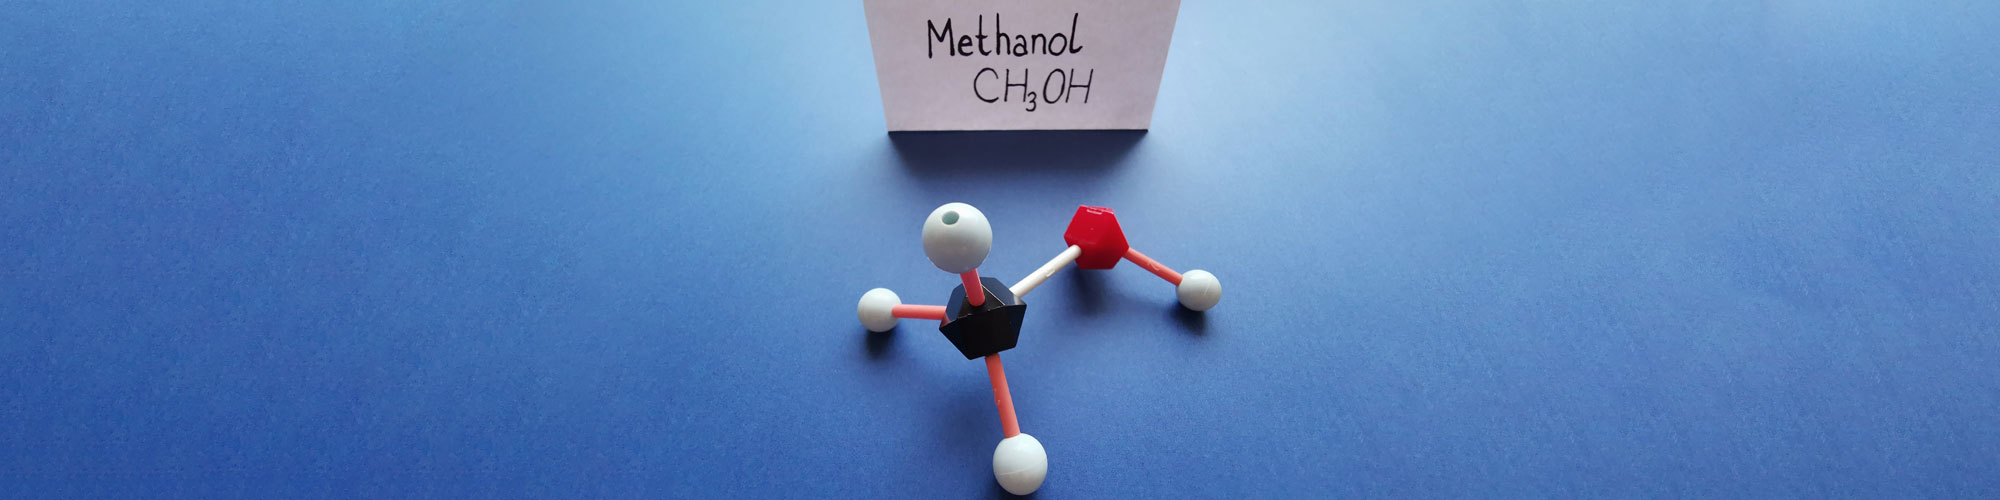 Molekülmodellmodell Methanol